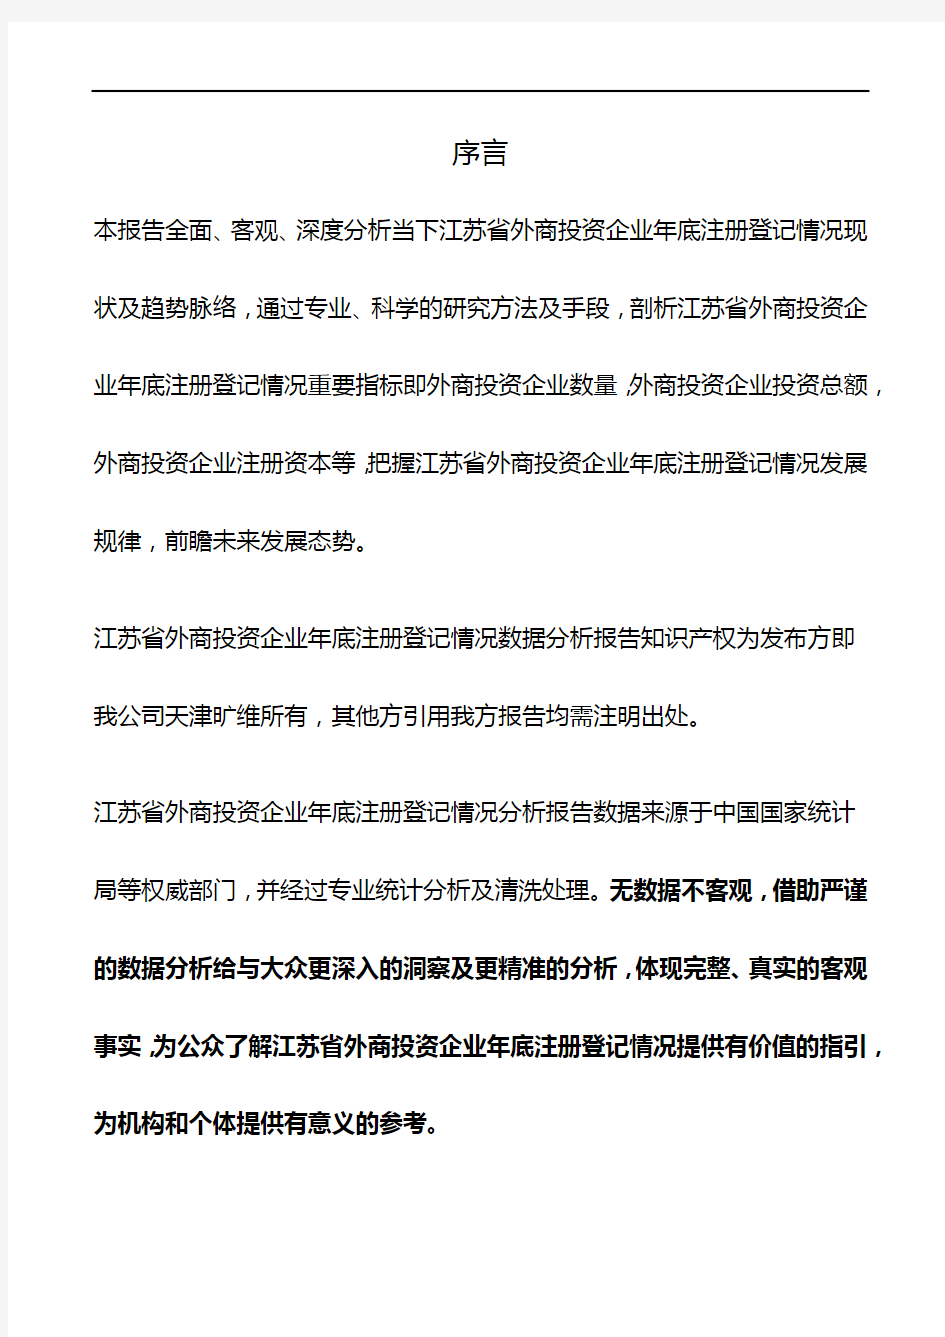 江苏省外商投资企业年底注册登记情况数据分析报告2019版